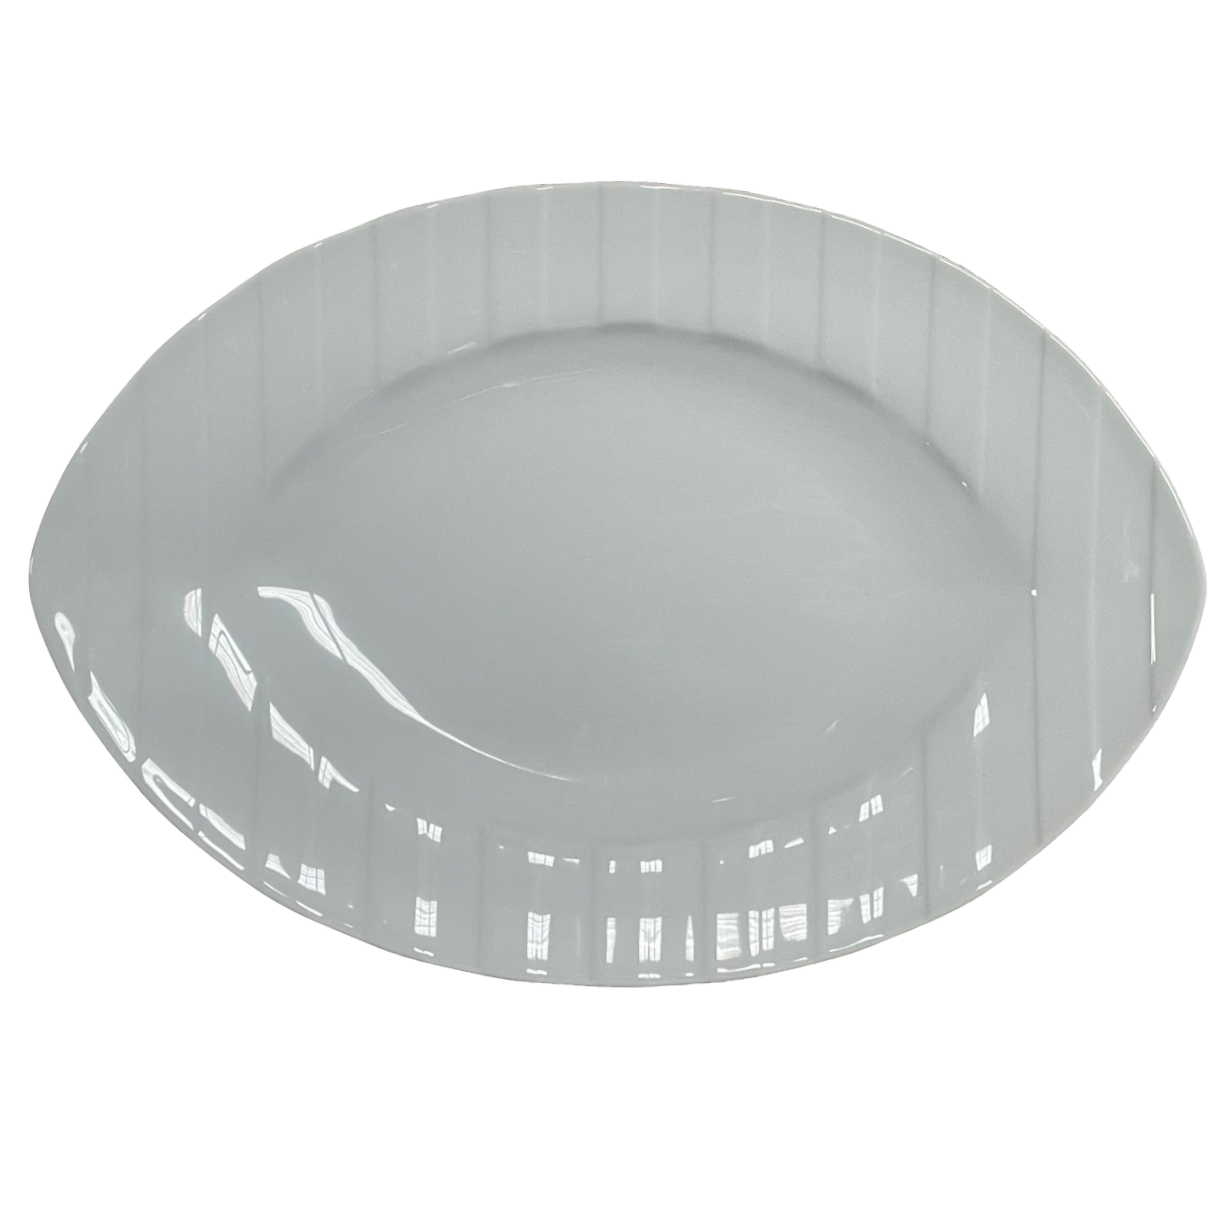 Saturne - Oval platter 33 cm